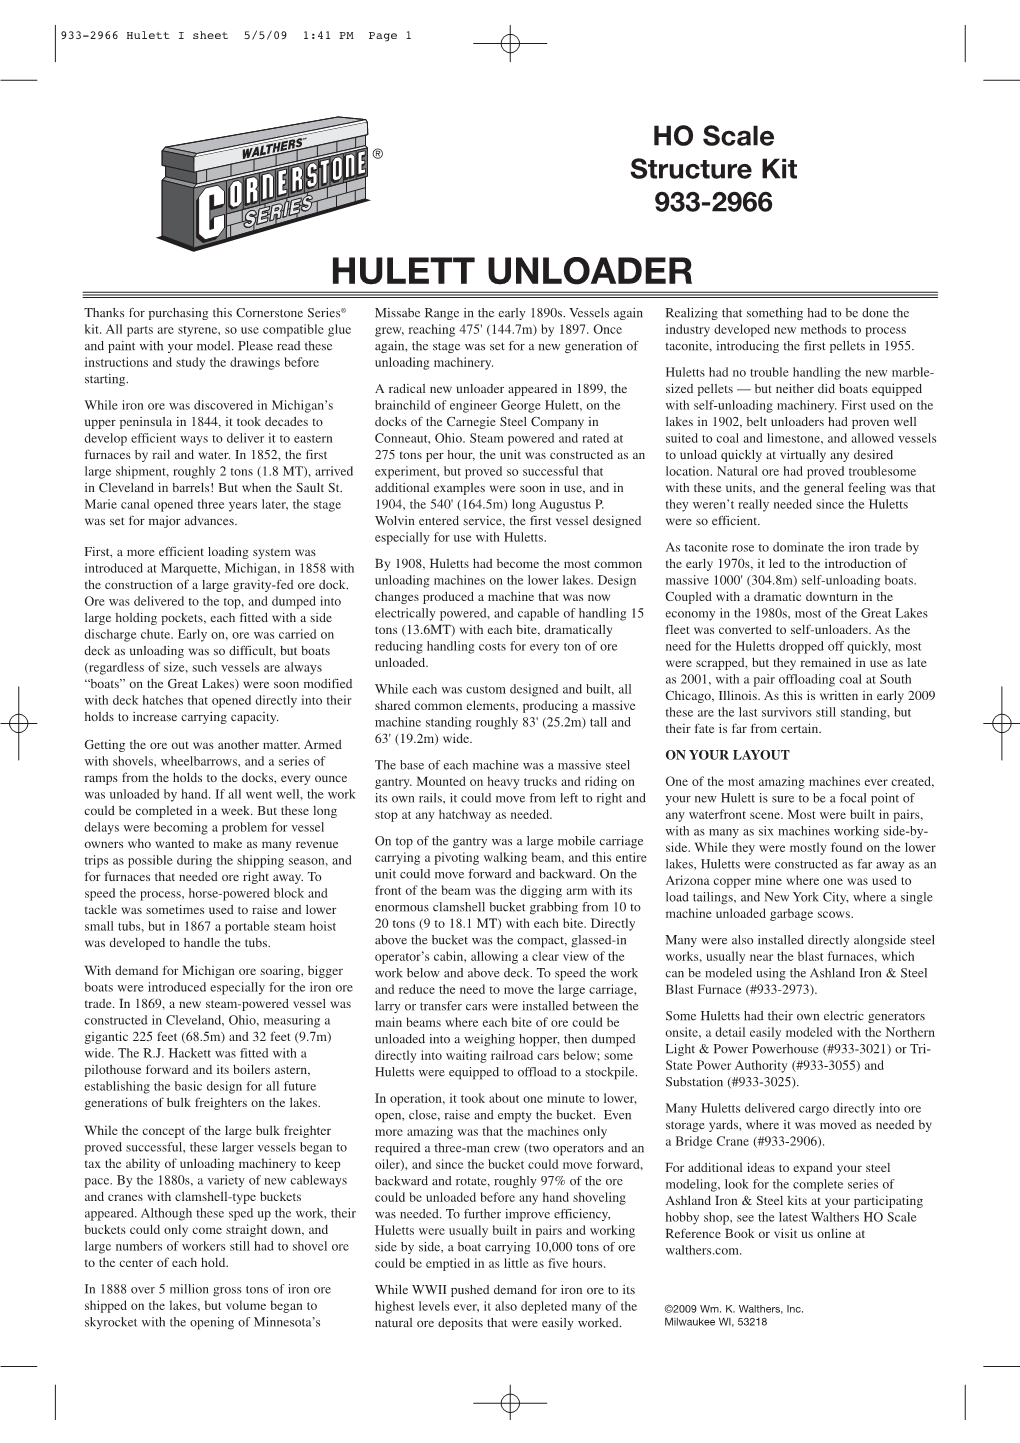 Hulett Unloader